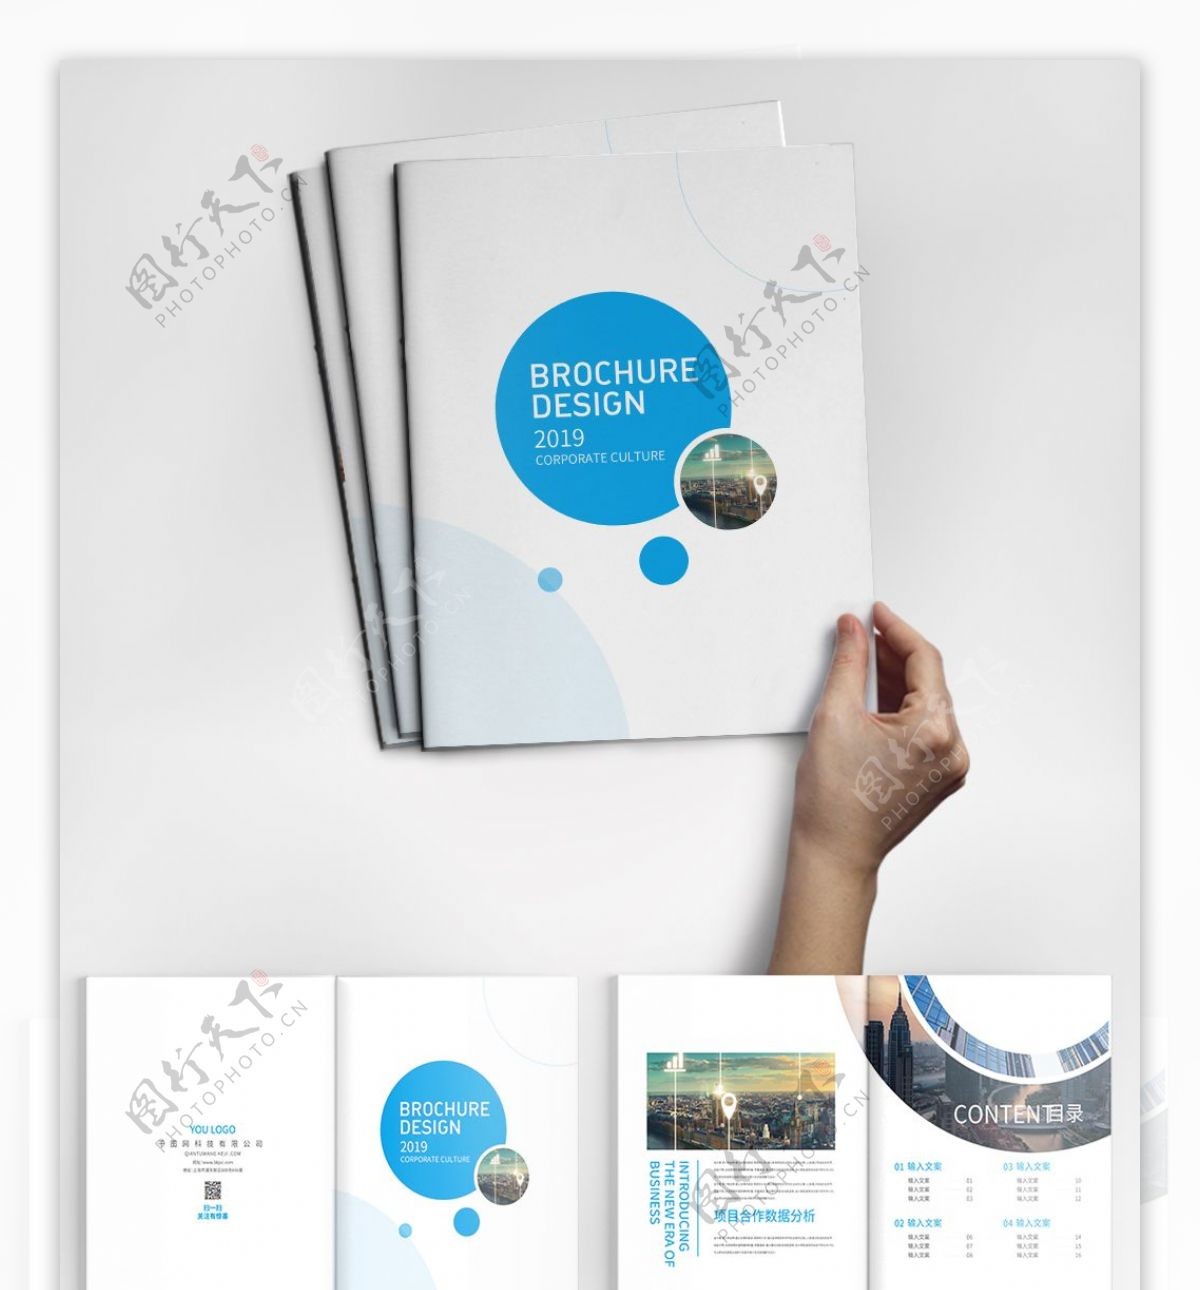 蓝色高端简约企业画册设计